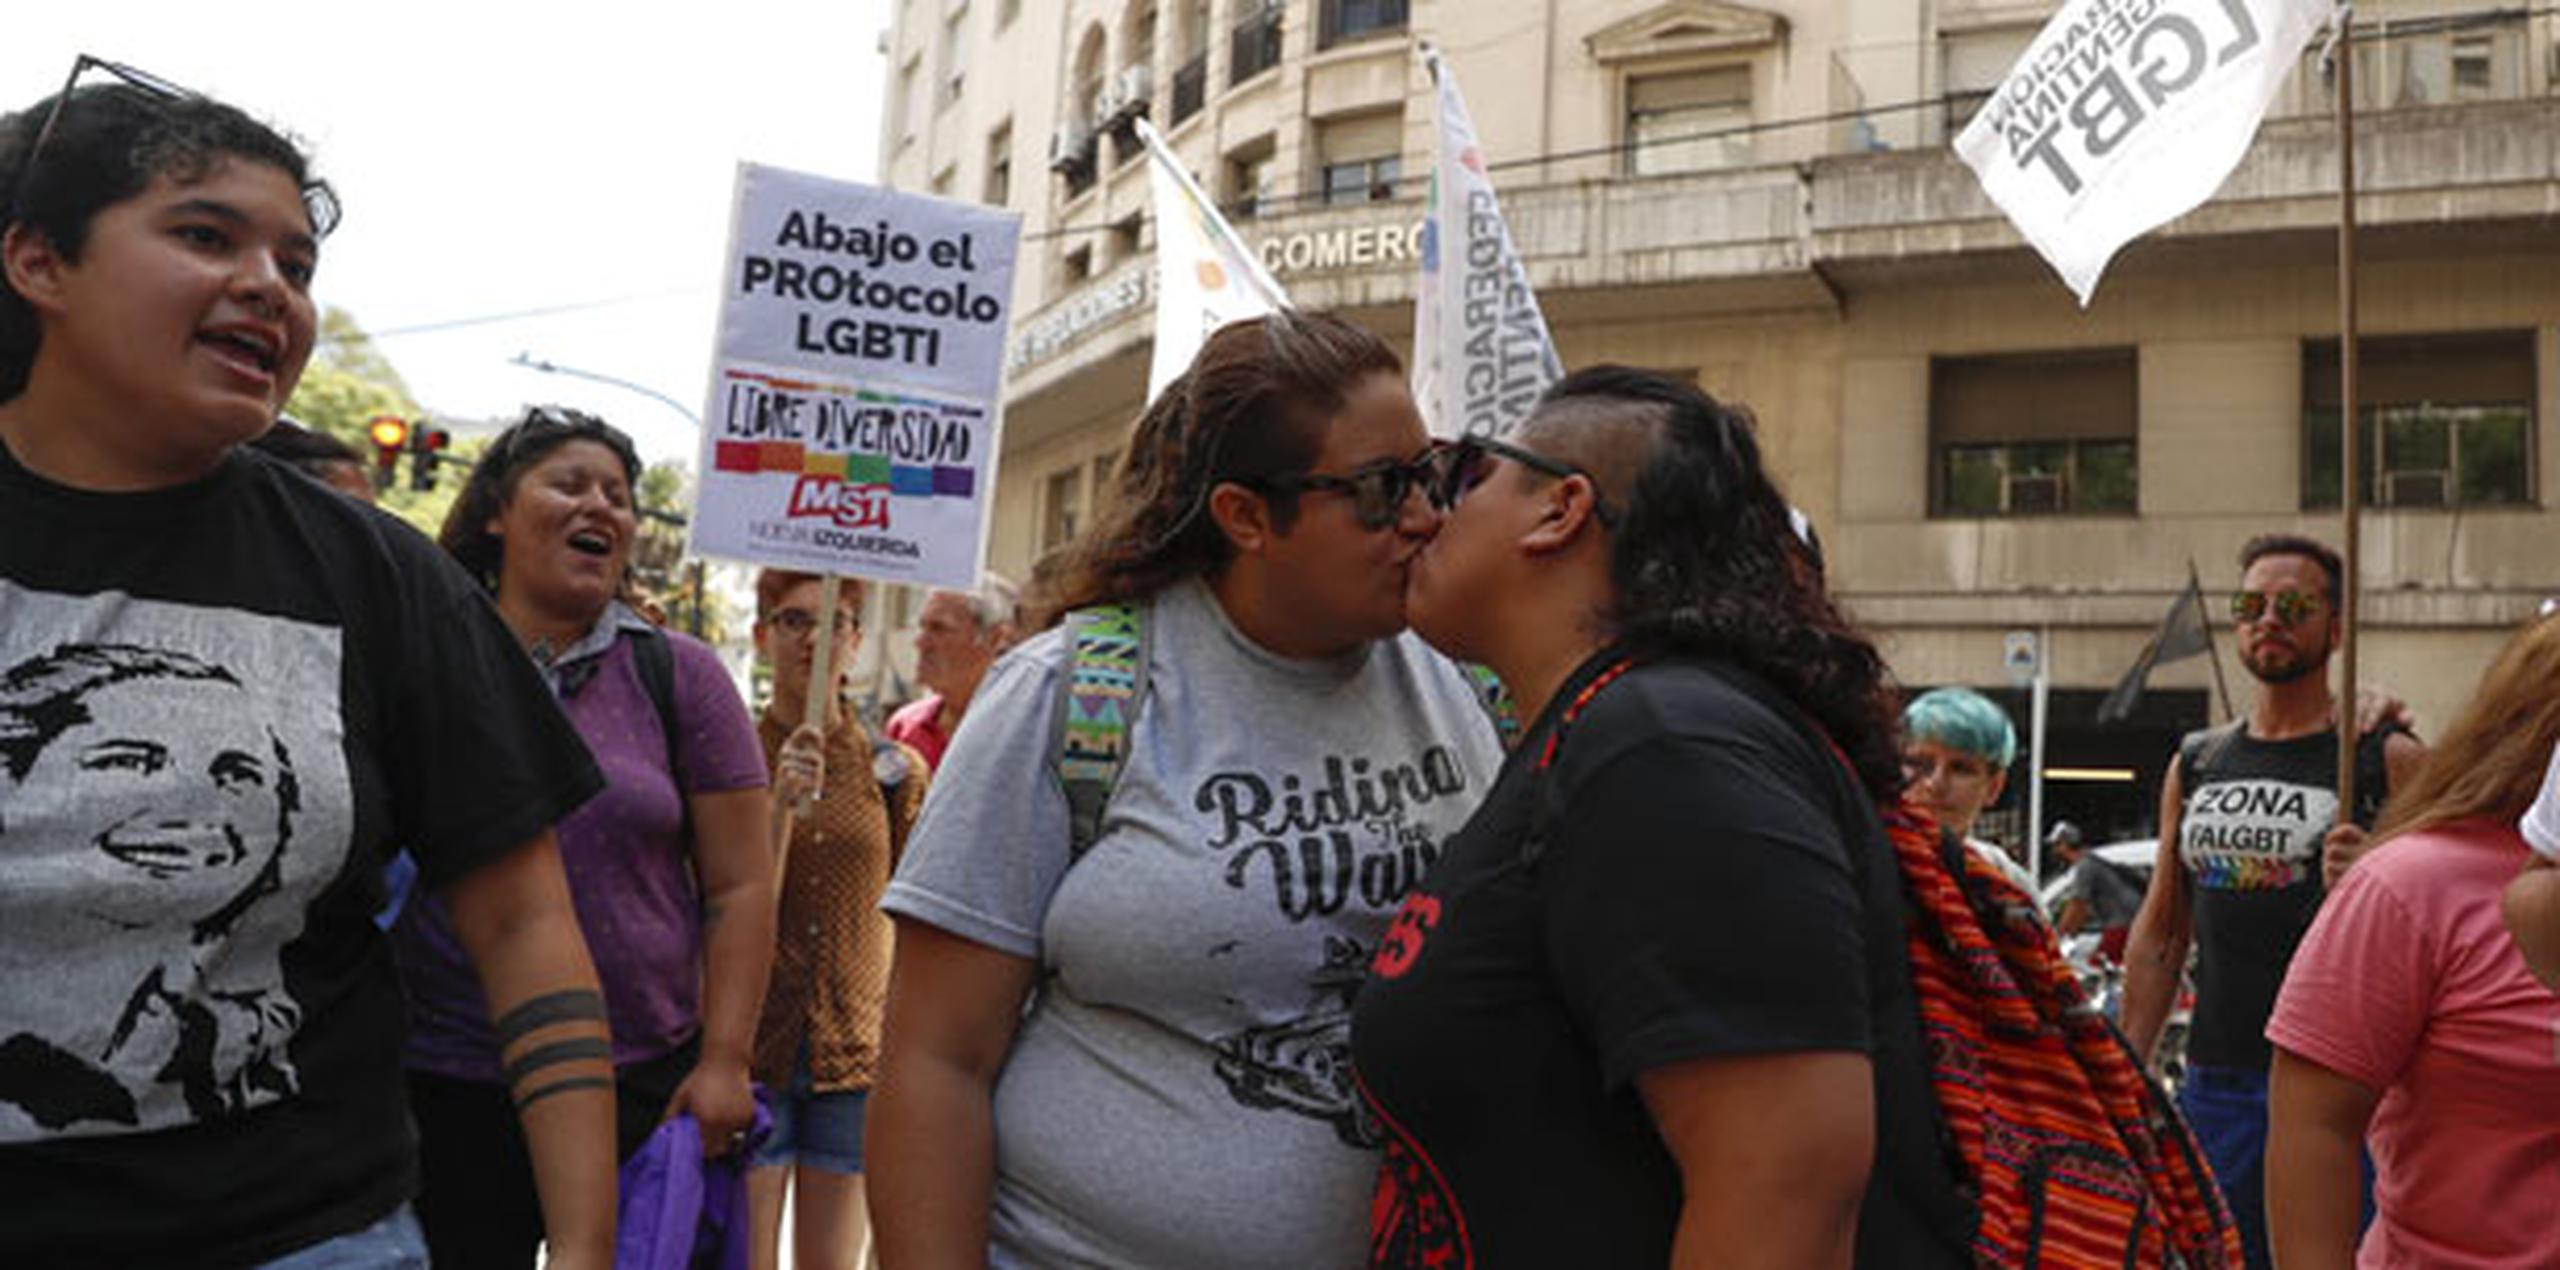 En la protesta, varias parejas se besaron públicamente, (EFE)